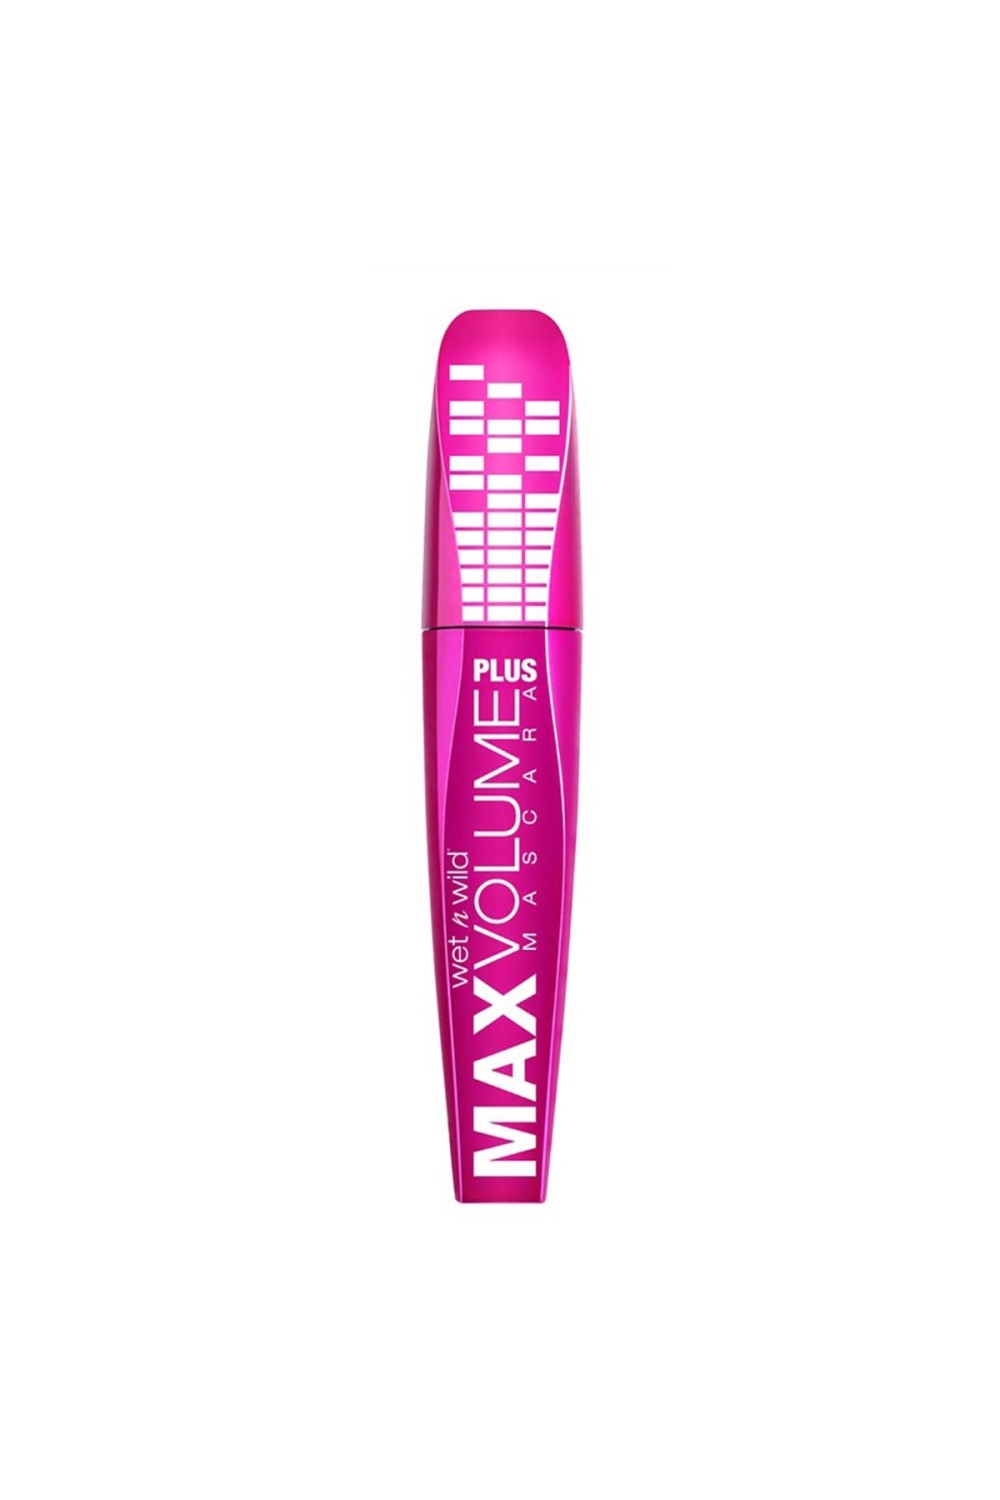 Wet N Wild Max Volume Plus Mascara E1501 Black